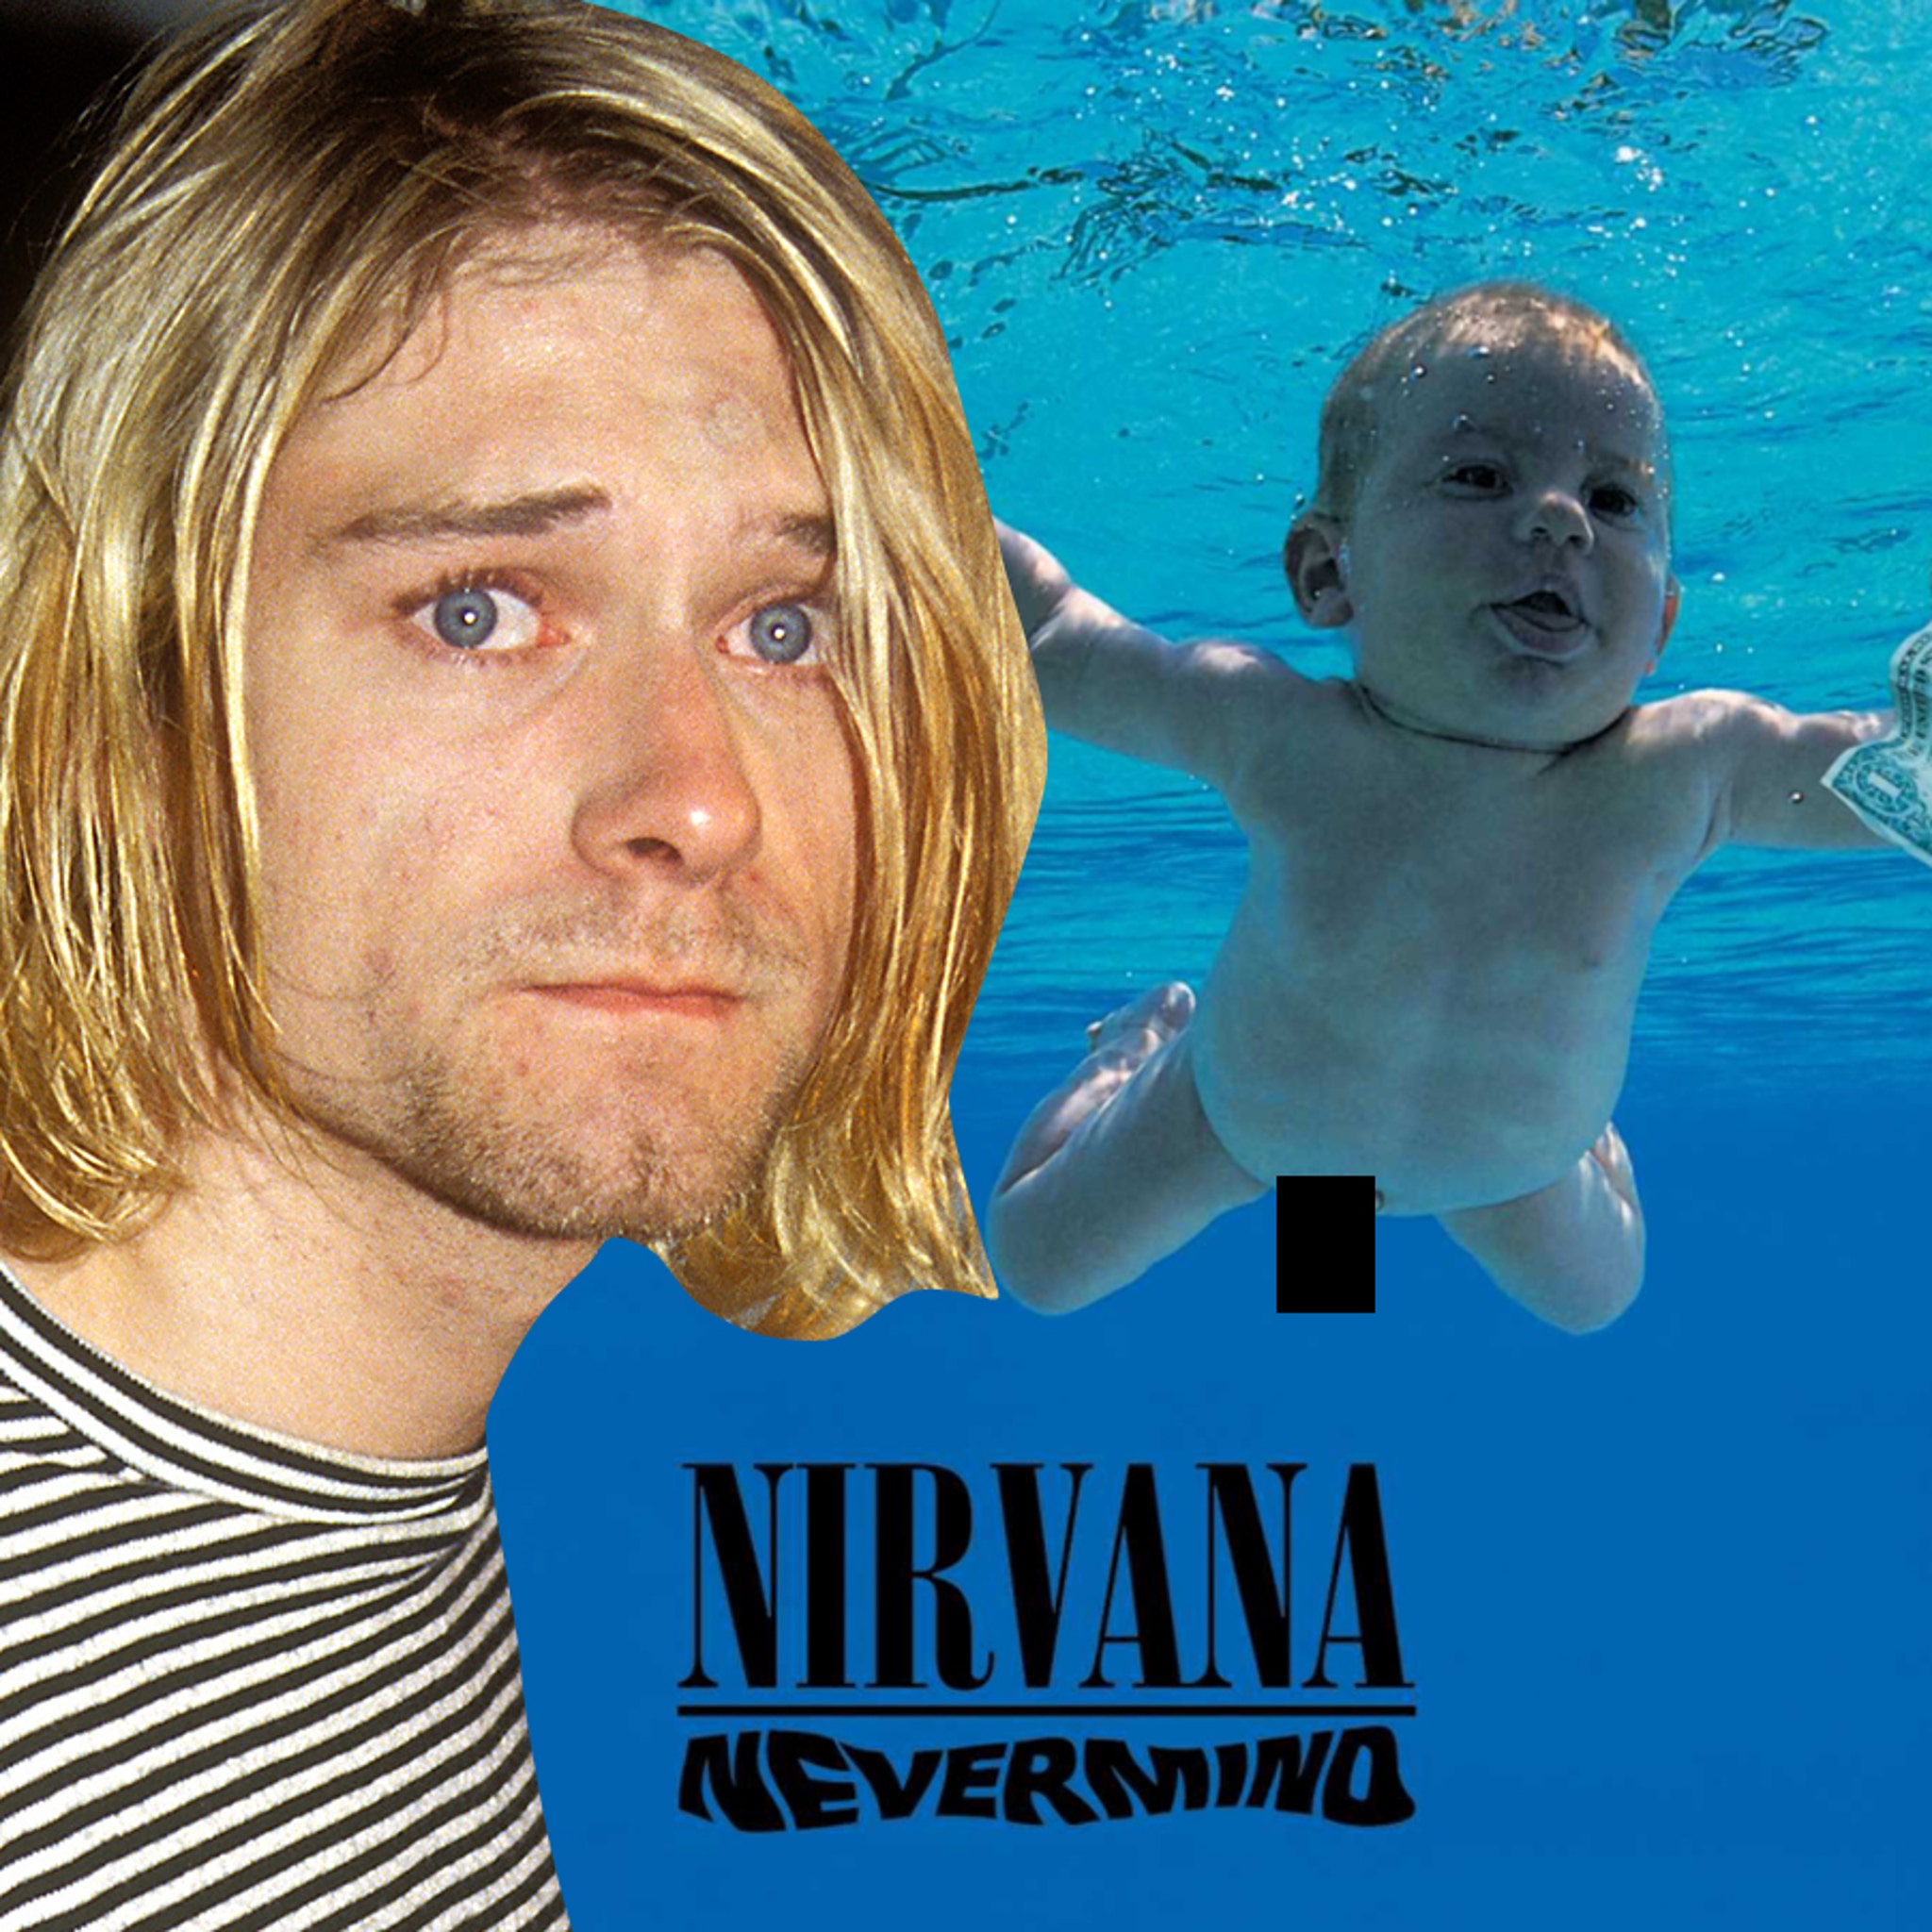 Album nirvana ‎Nirvana on